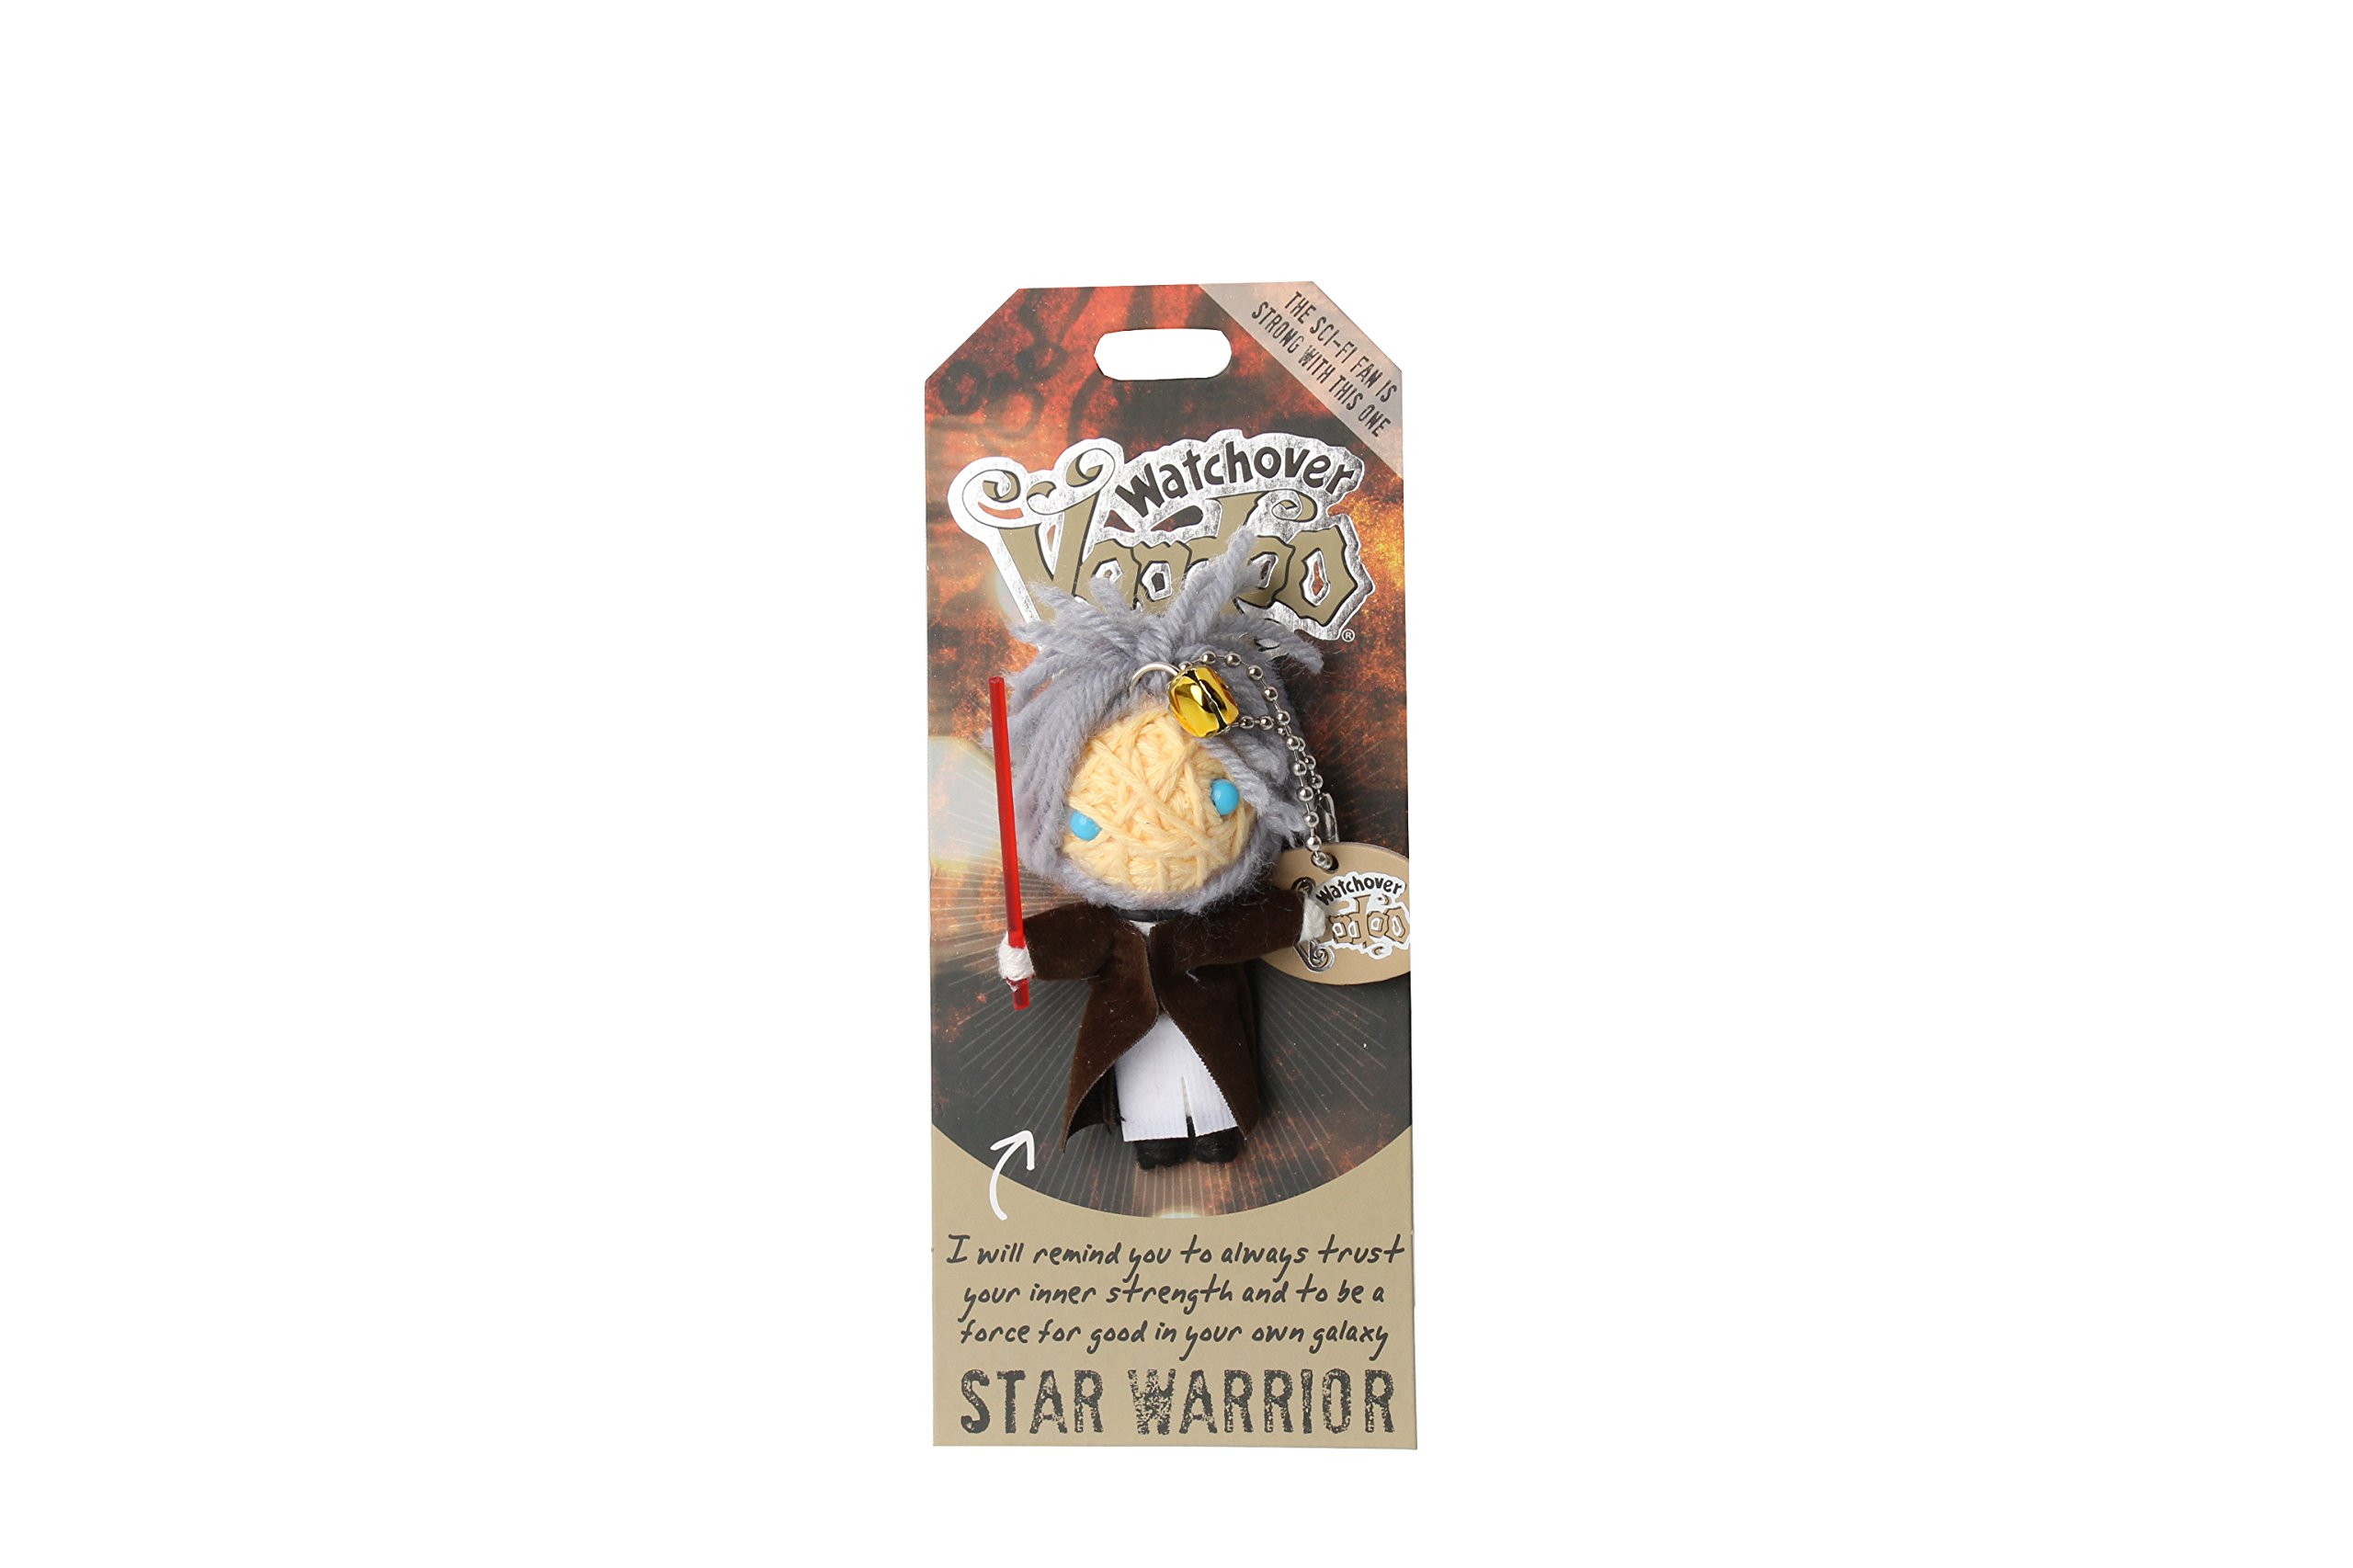 Watchover Voodoo- Star Warrior